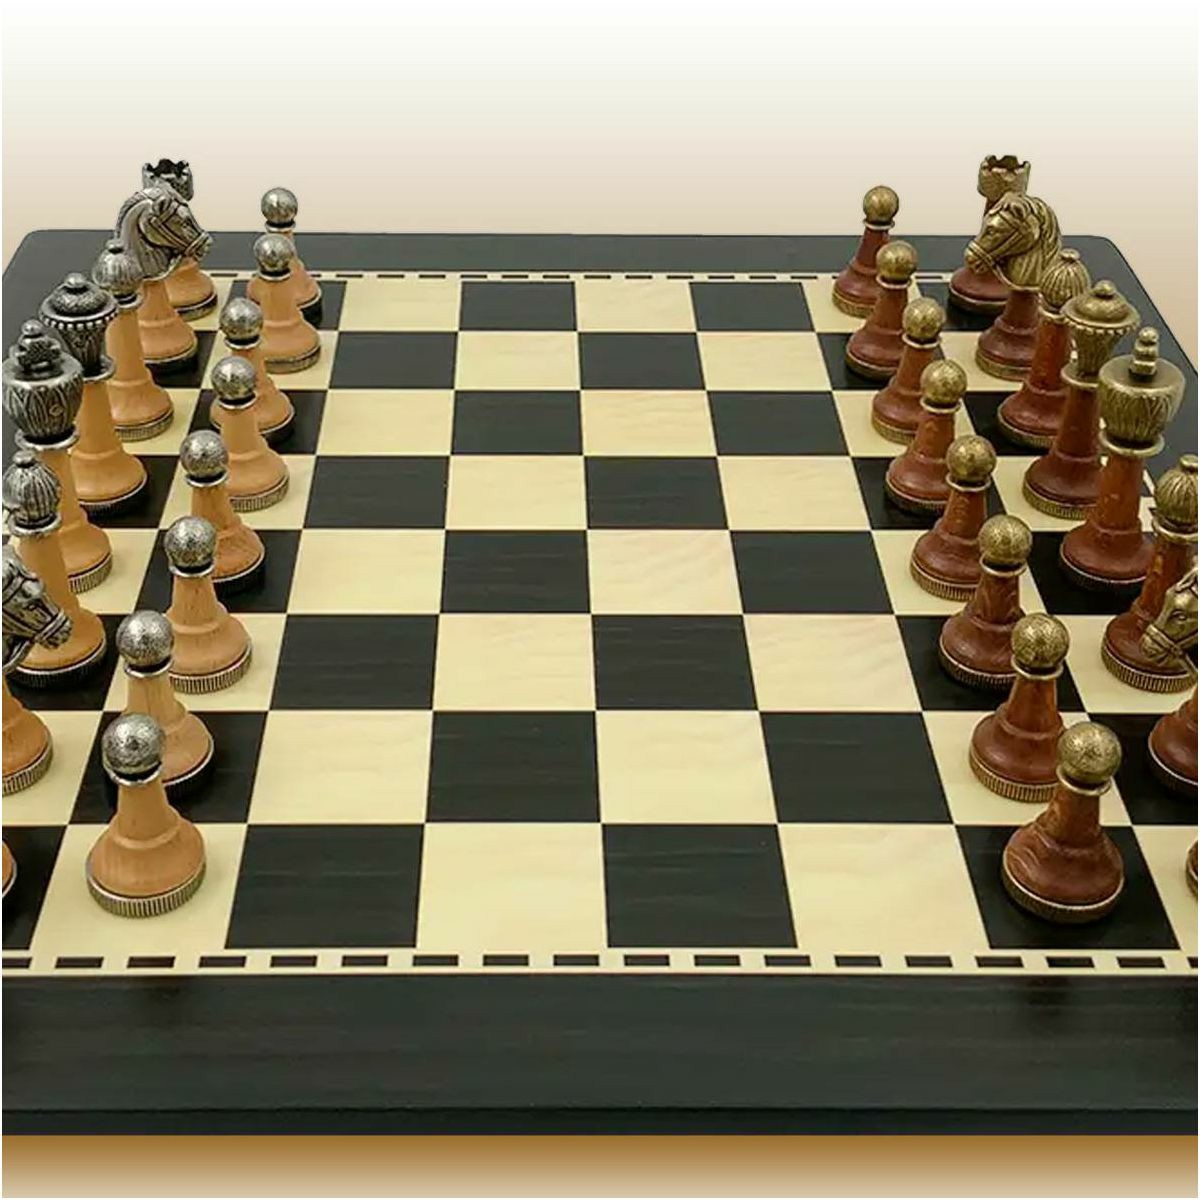 Šah Set Arabesque Staunton 40 x 40 cm